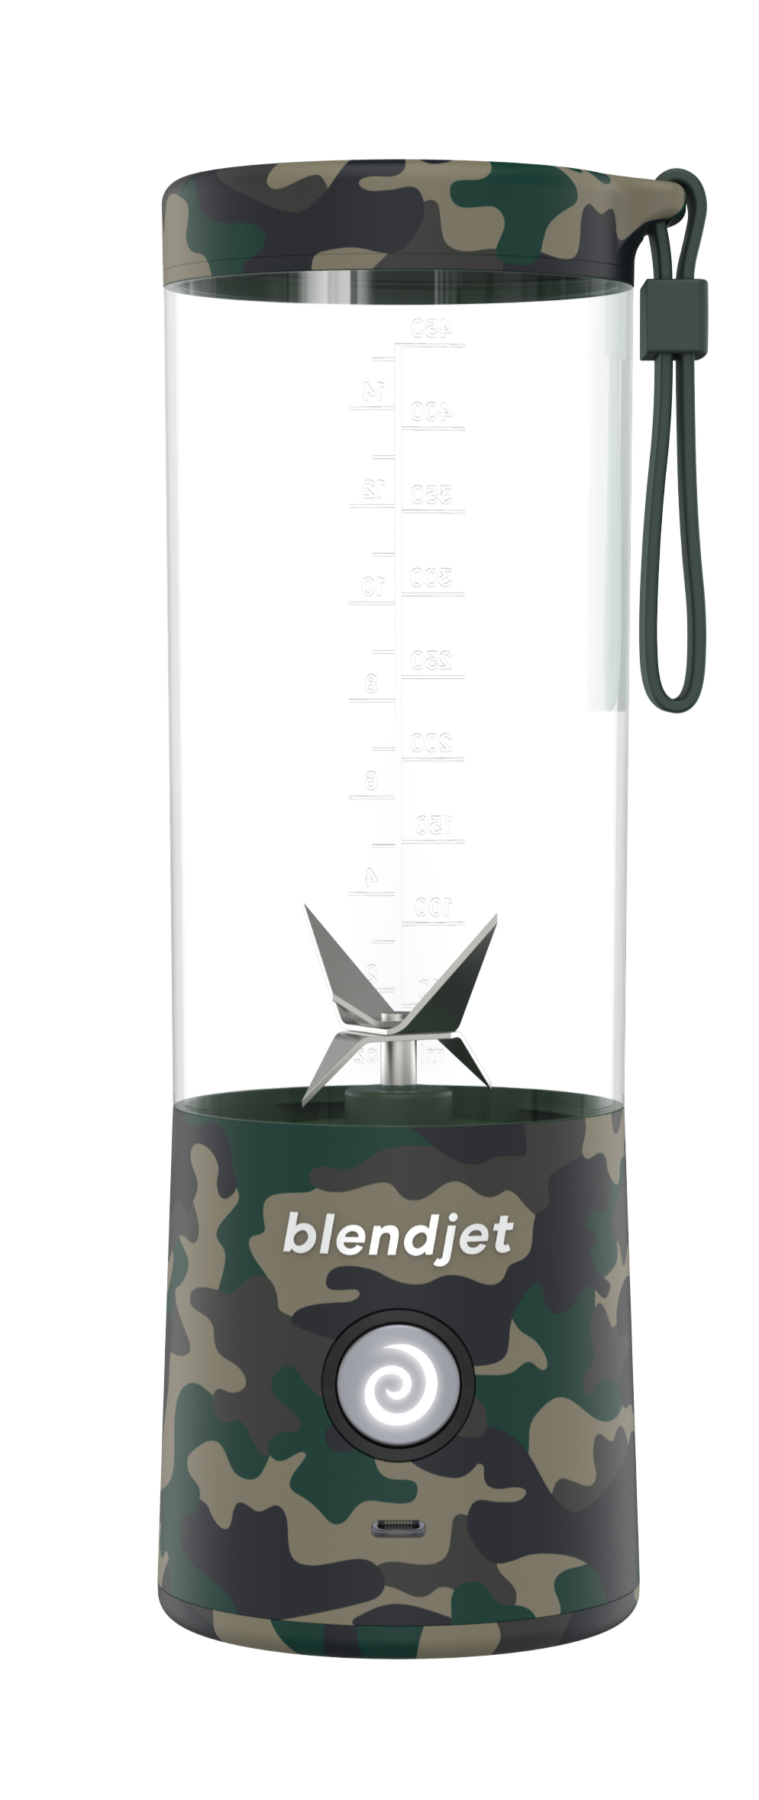 BlendJet 2 Portable Blender